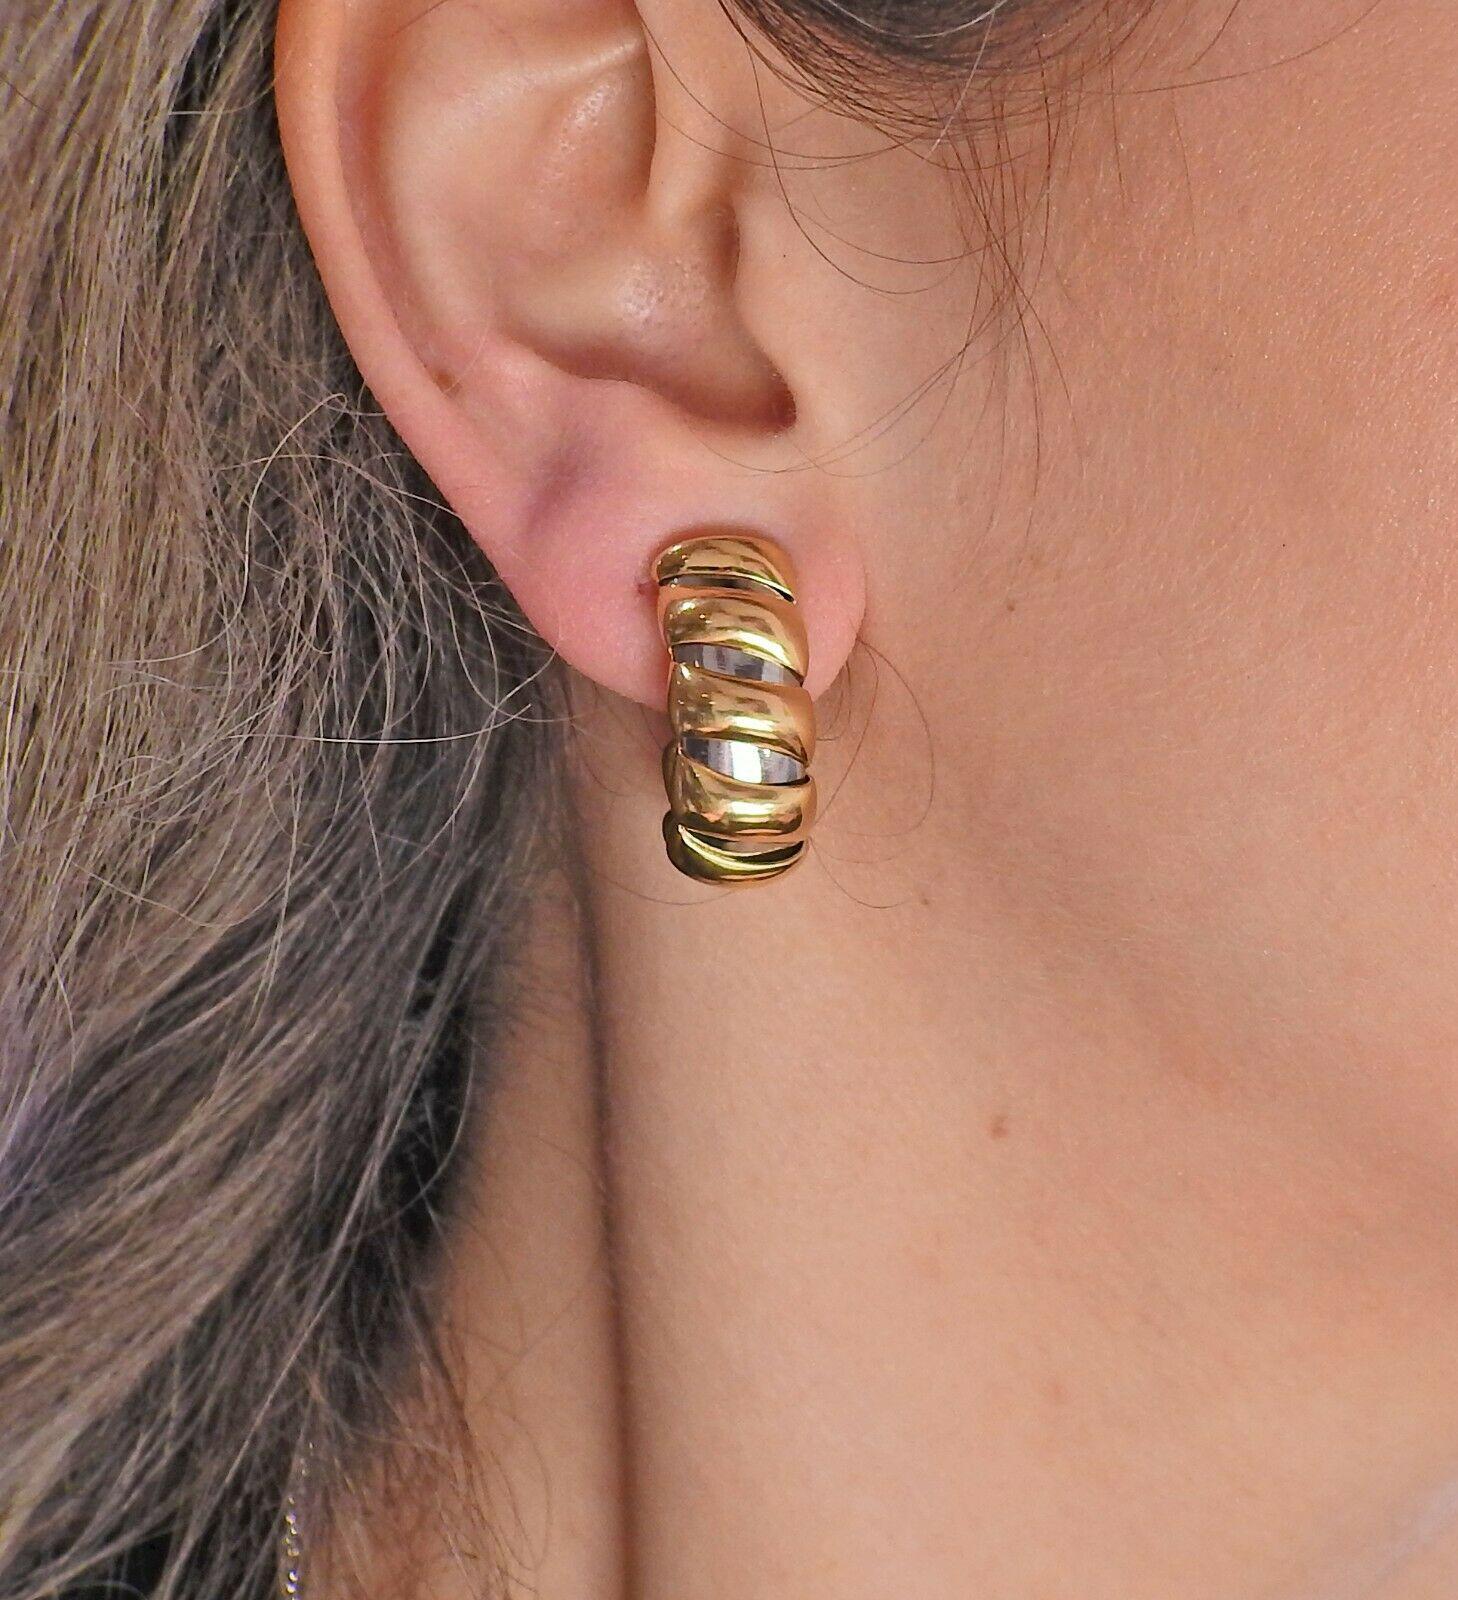 18k gold & steel hoop earrings by Bvlgari. Earrings are 26mm x 11mm. Marked - M, Bvlgari, 2337AL. Weight - 30.9 grams.
